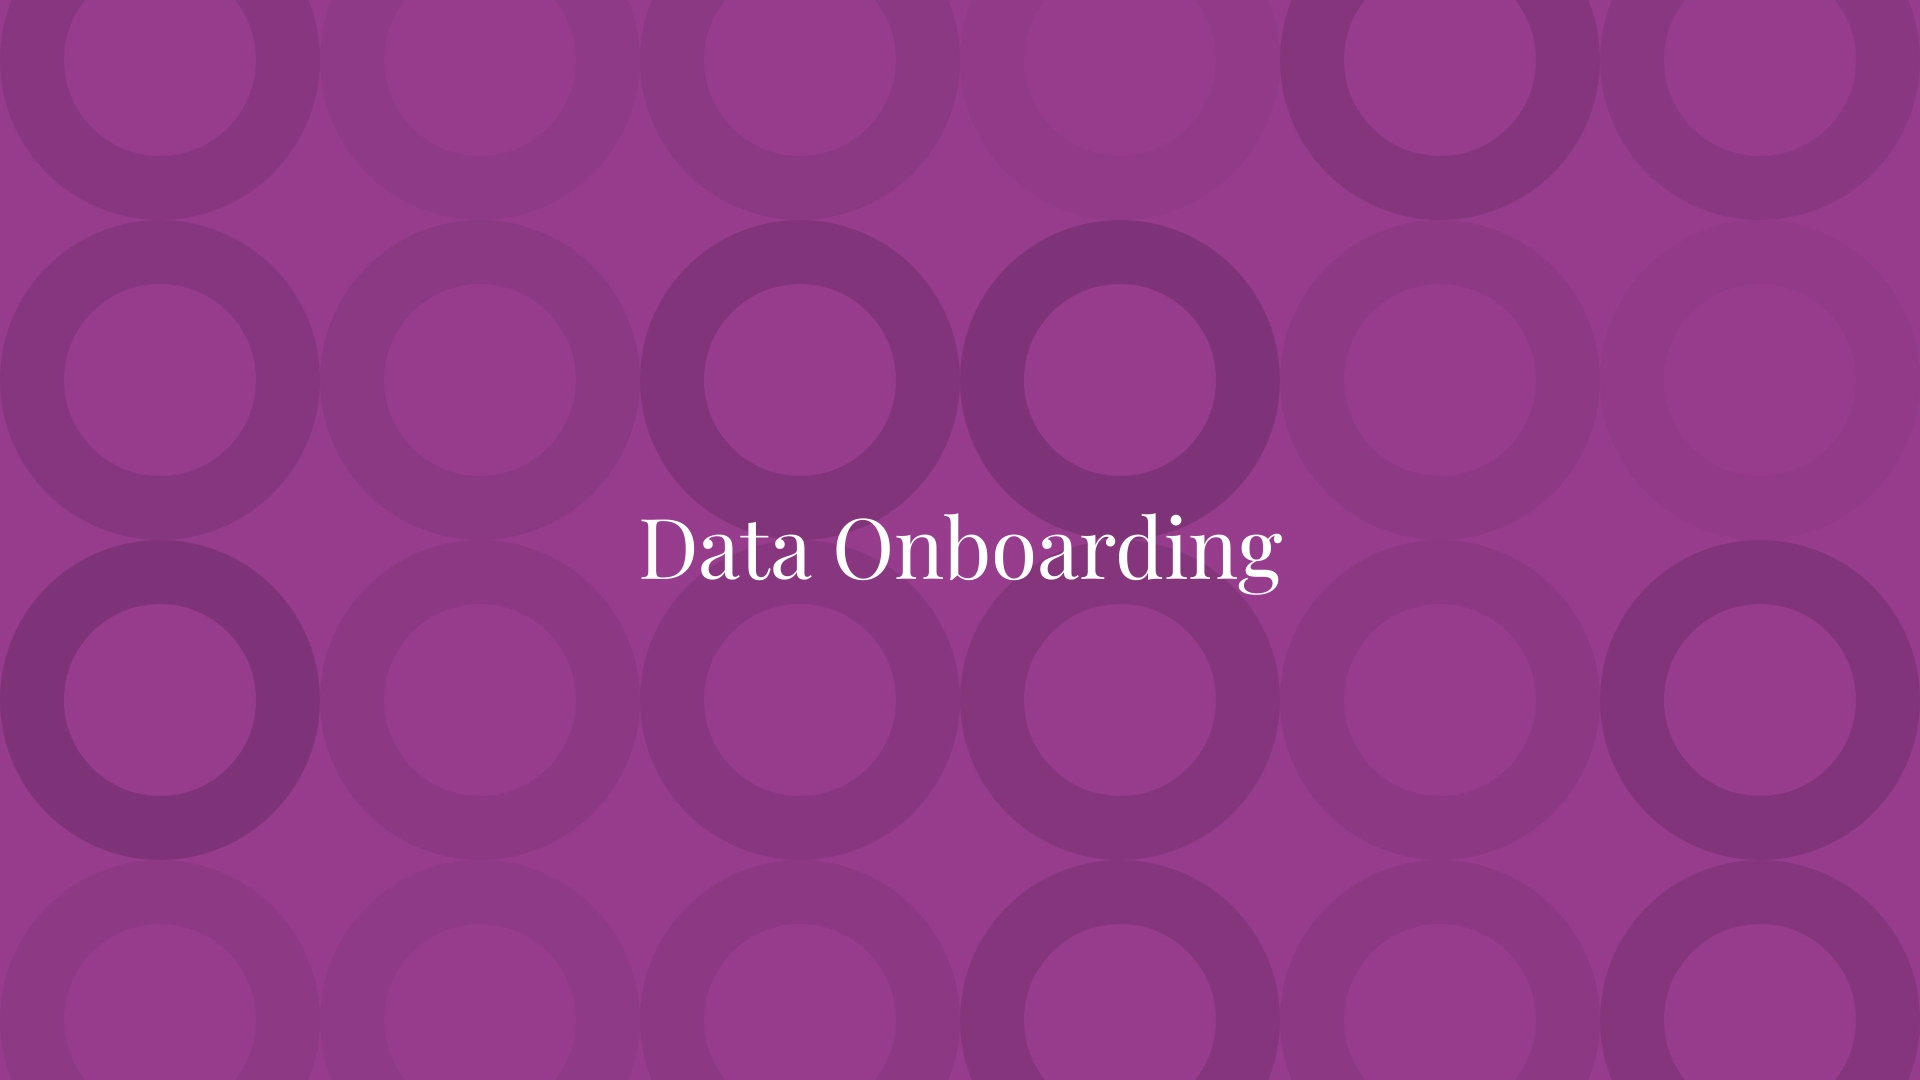 Data Onboarding